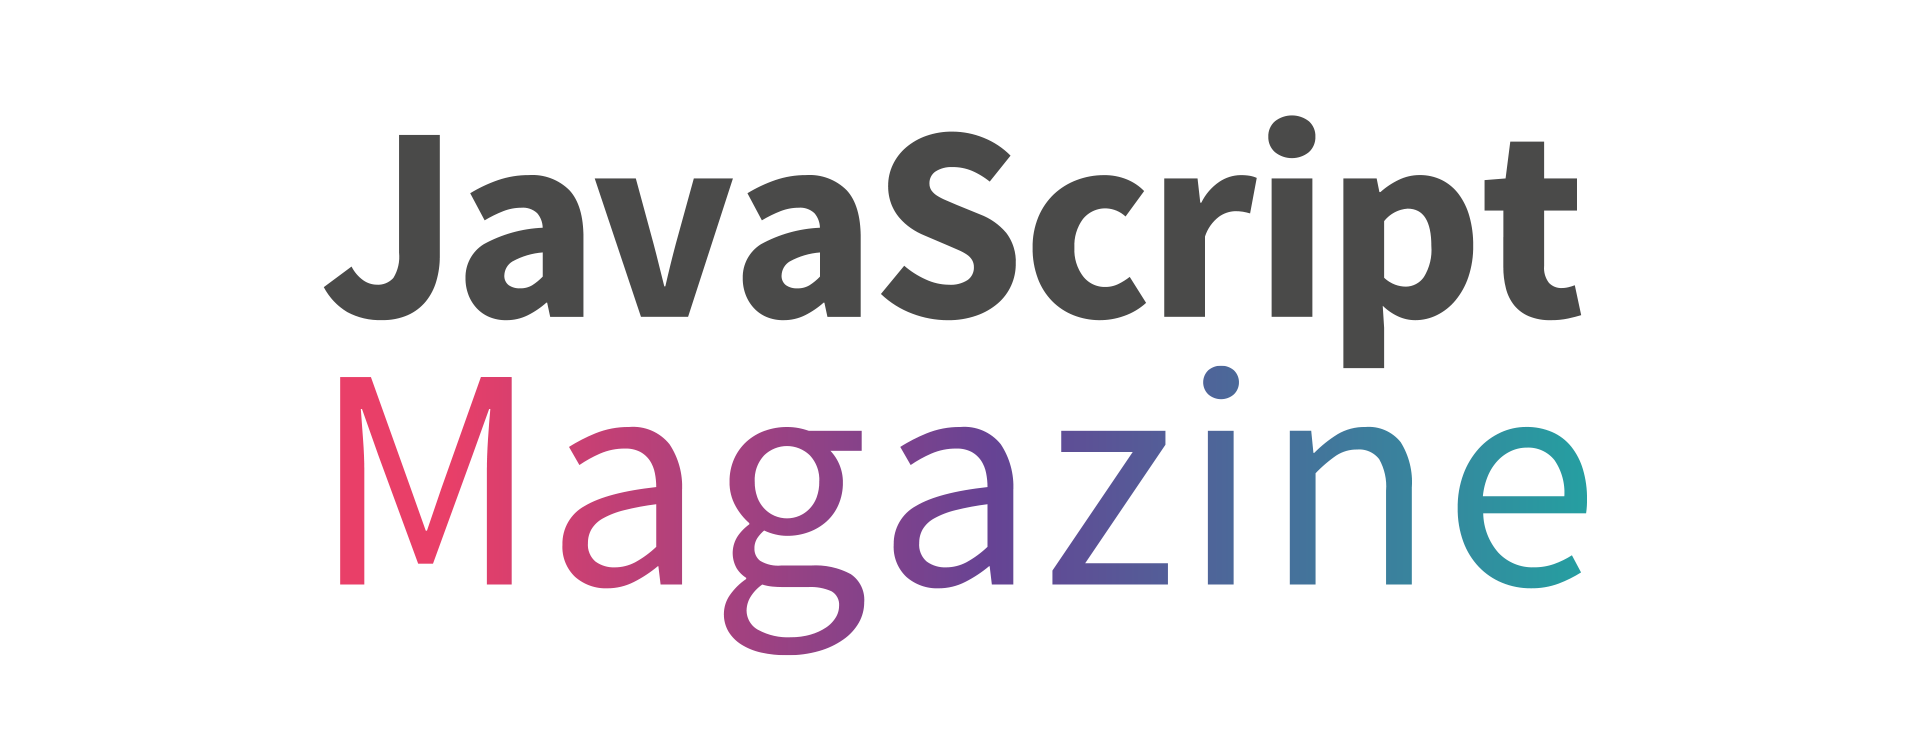 JavaScript Magazine